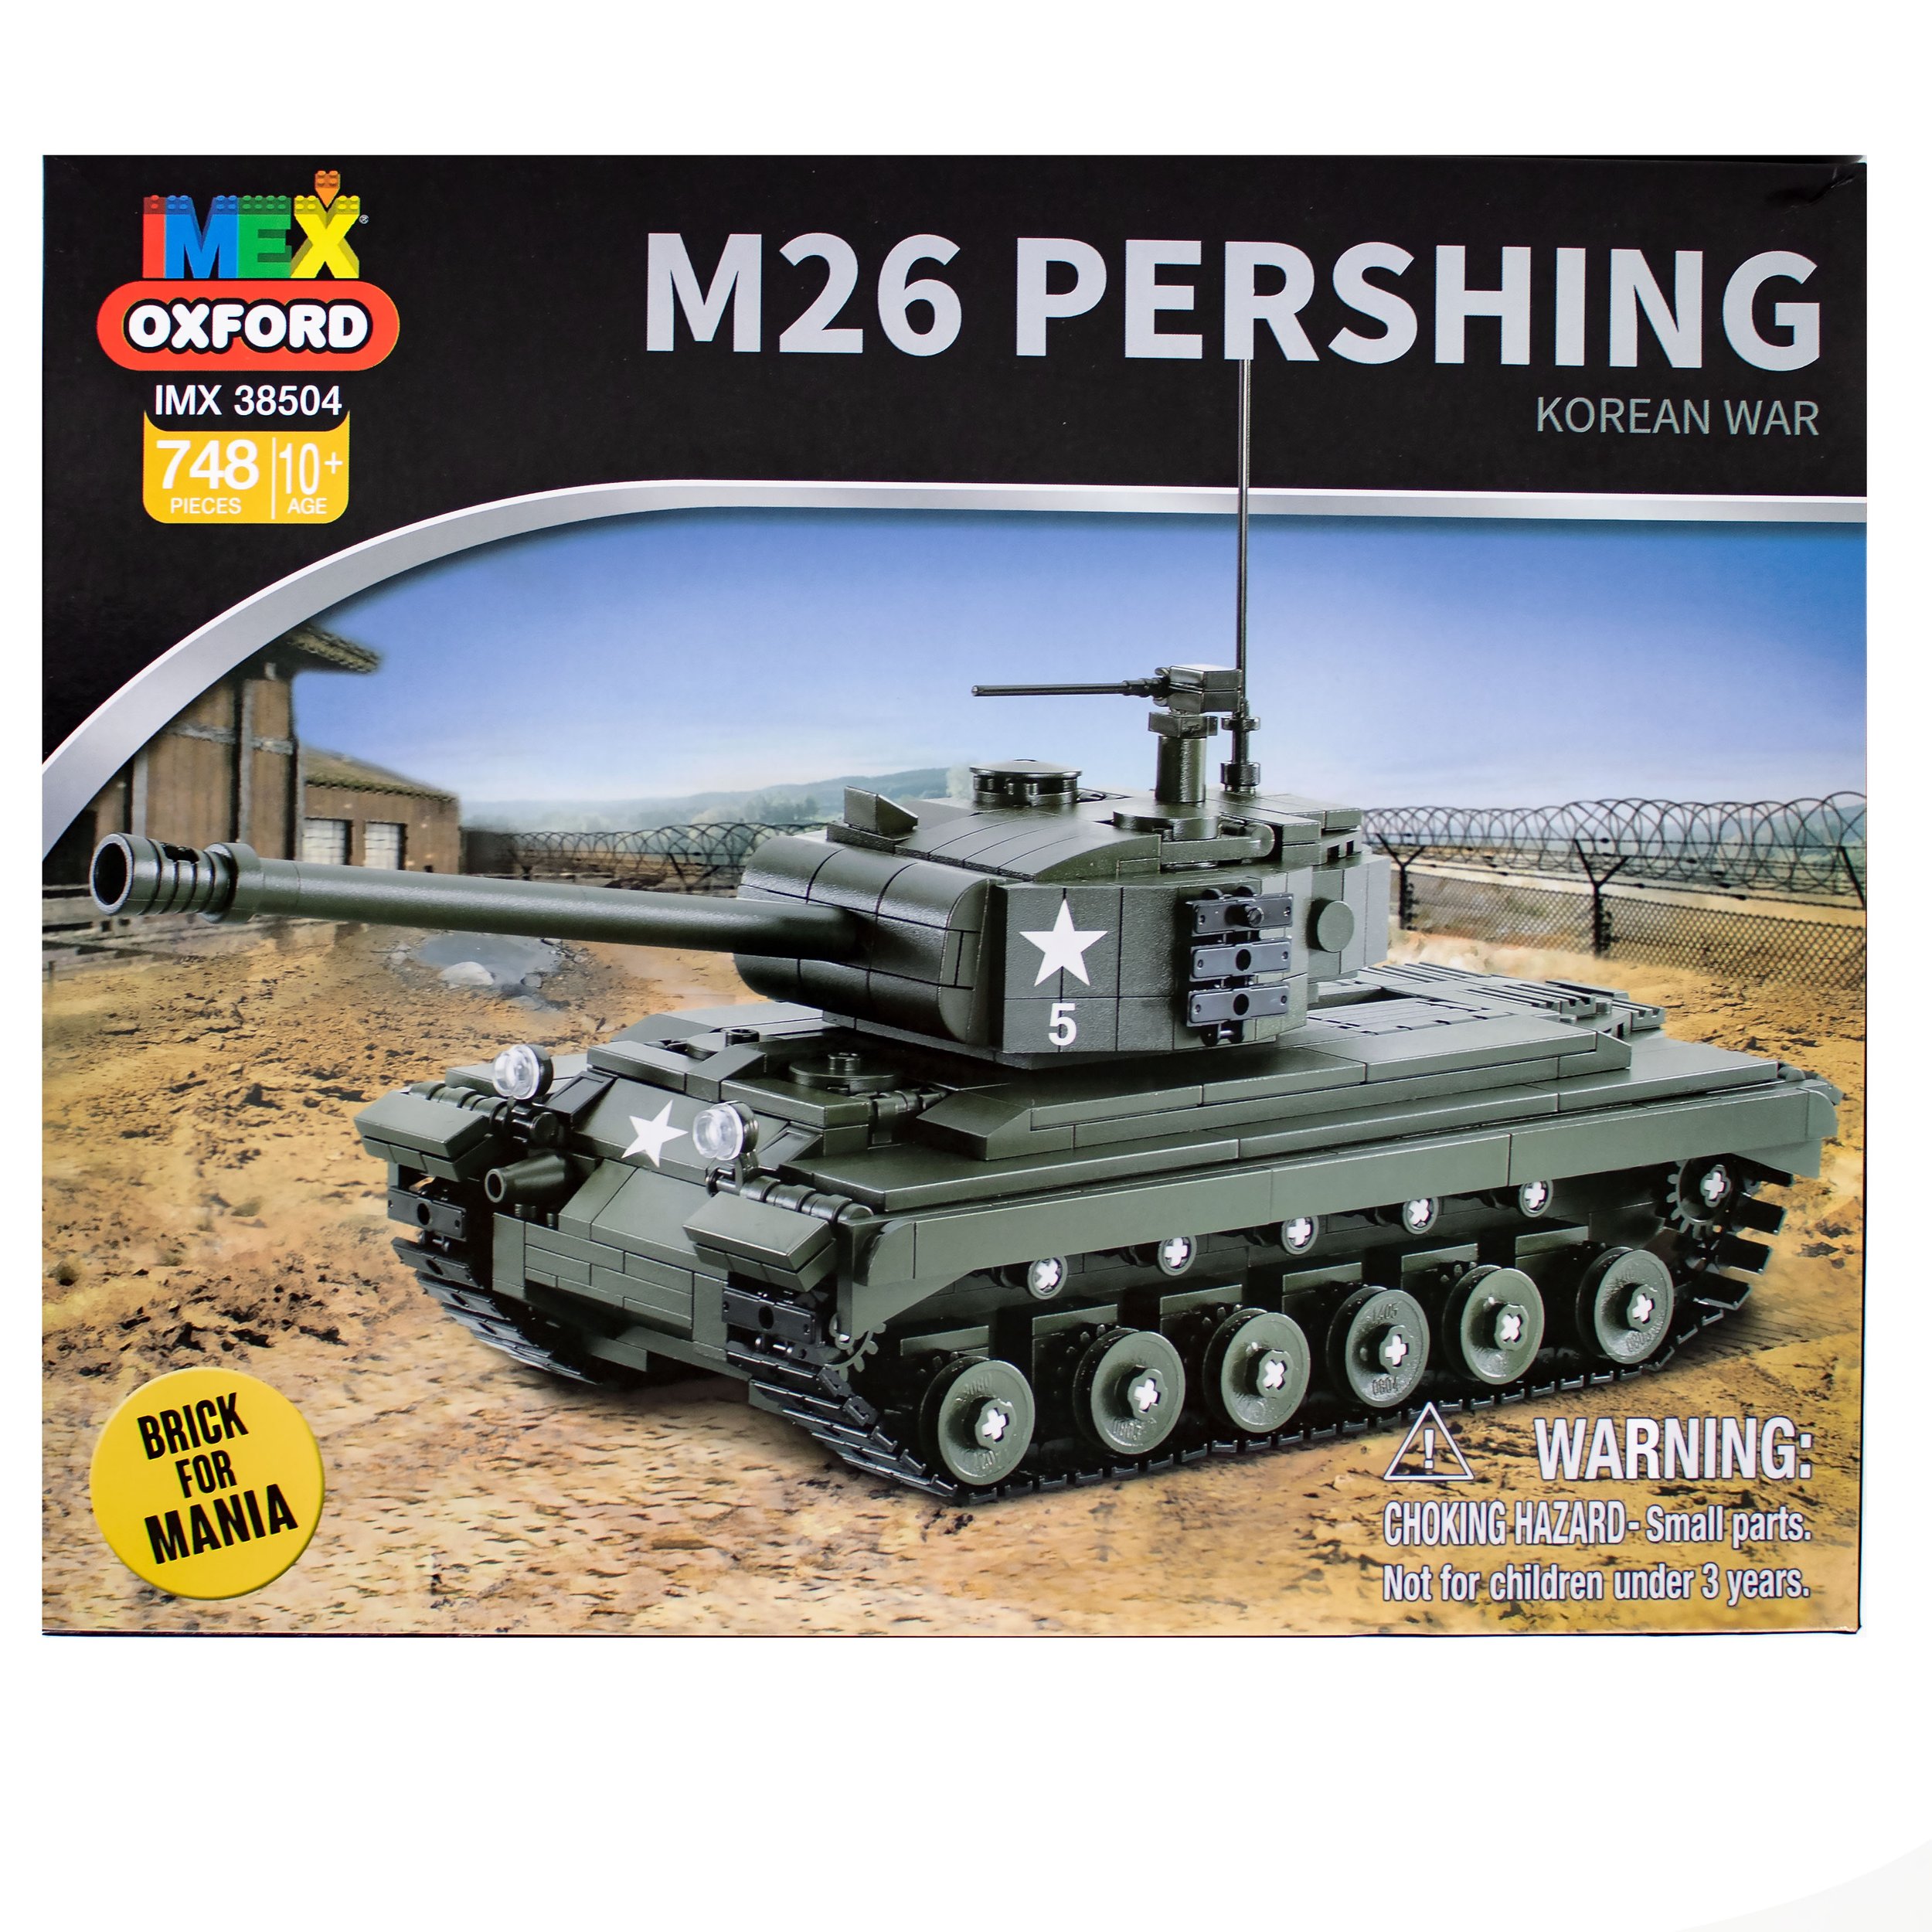 M26 Pershing